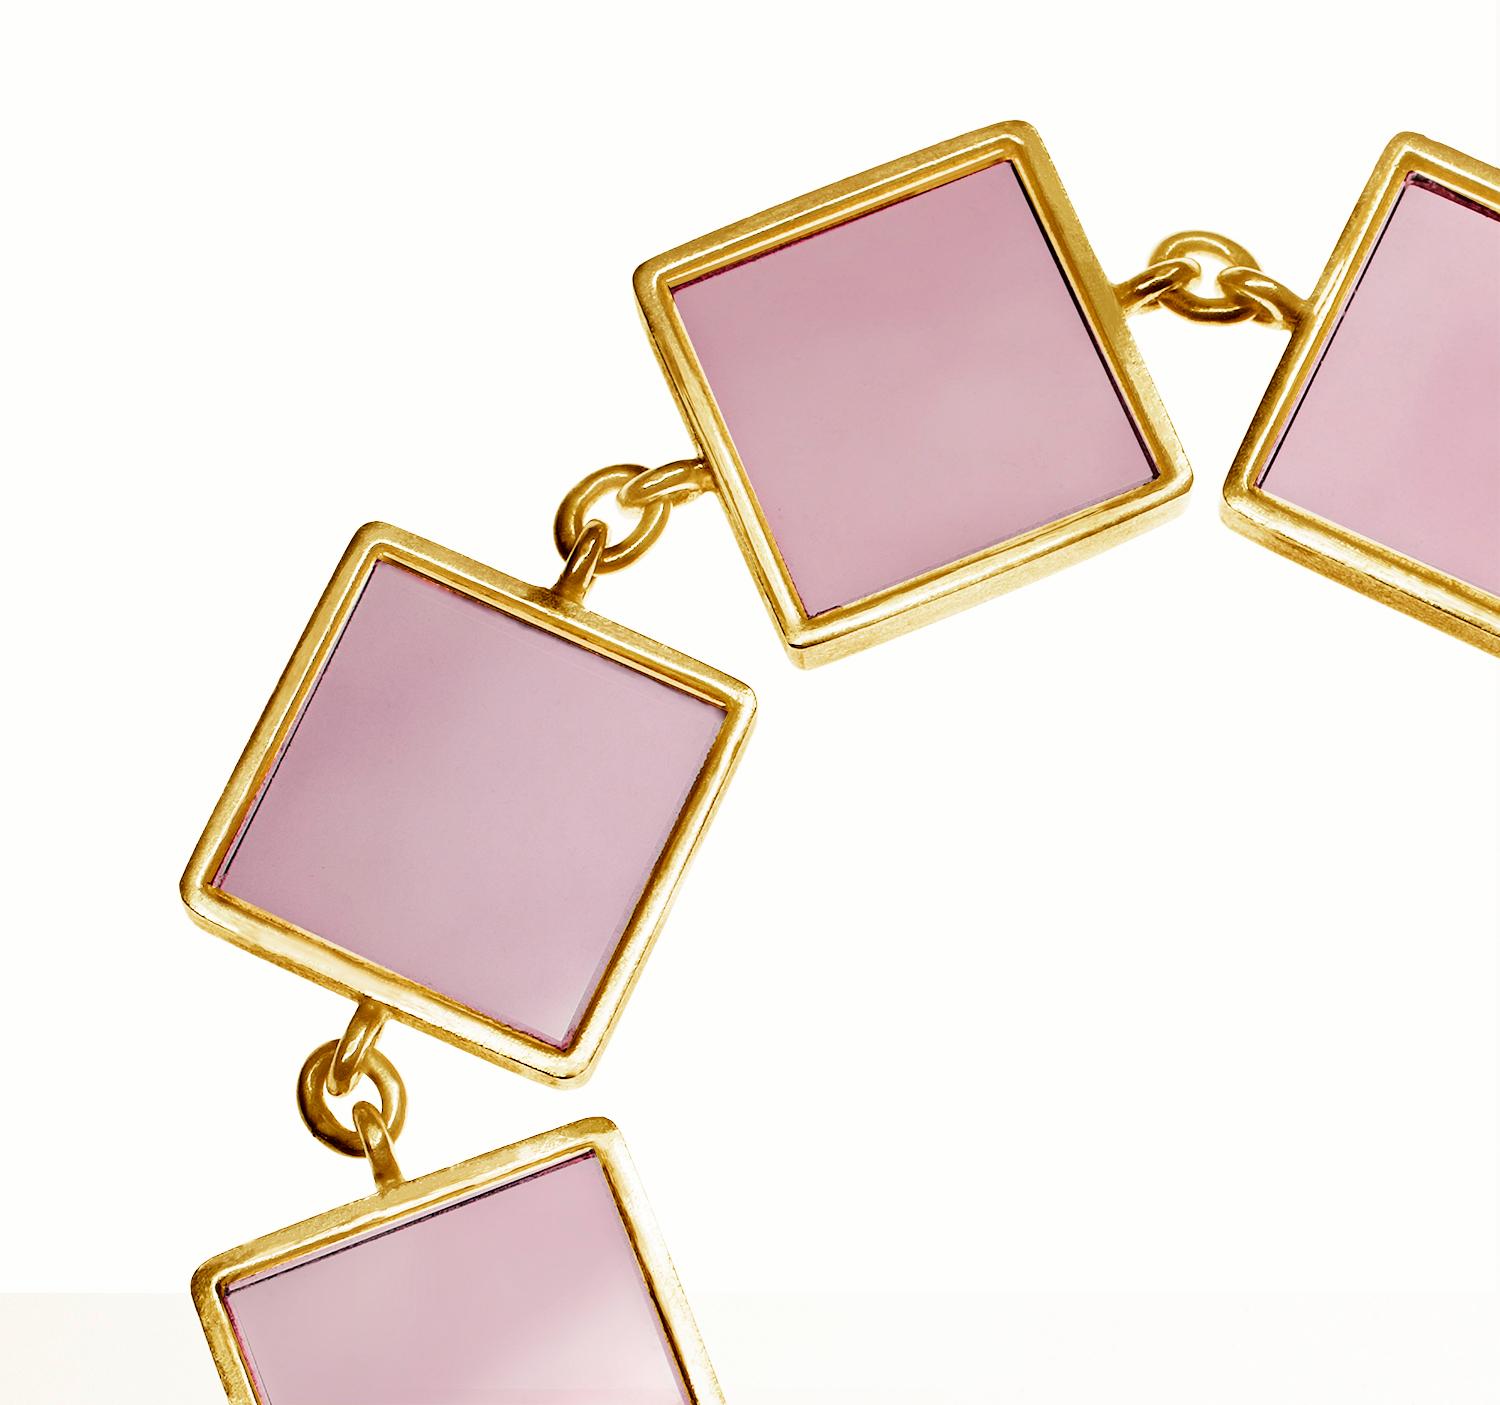 Ce bracelet de créateur de style art déco est en or rose ou jaune 14 carats et comporte sept pierres en onyx rose de 15x15x3 mm. La collection Ink a été présentée dans Harper's Bazaar UA et Vogue UA.

La taille inhabituelle et la couleur rose des